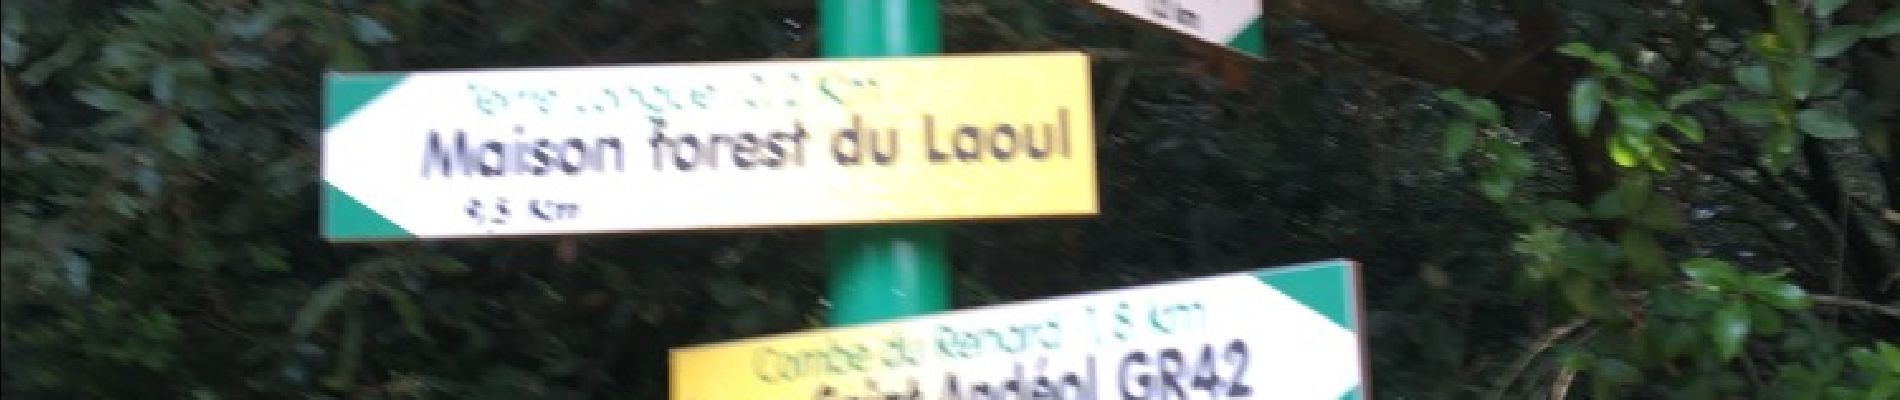 POI Bourg-Saint-Andéol - challon. croisement - Photo